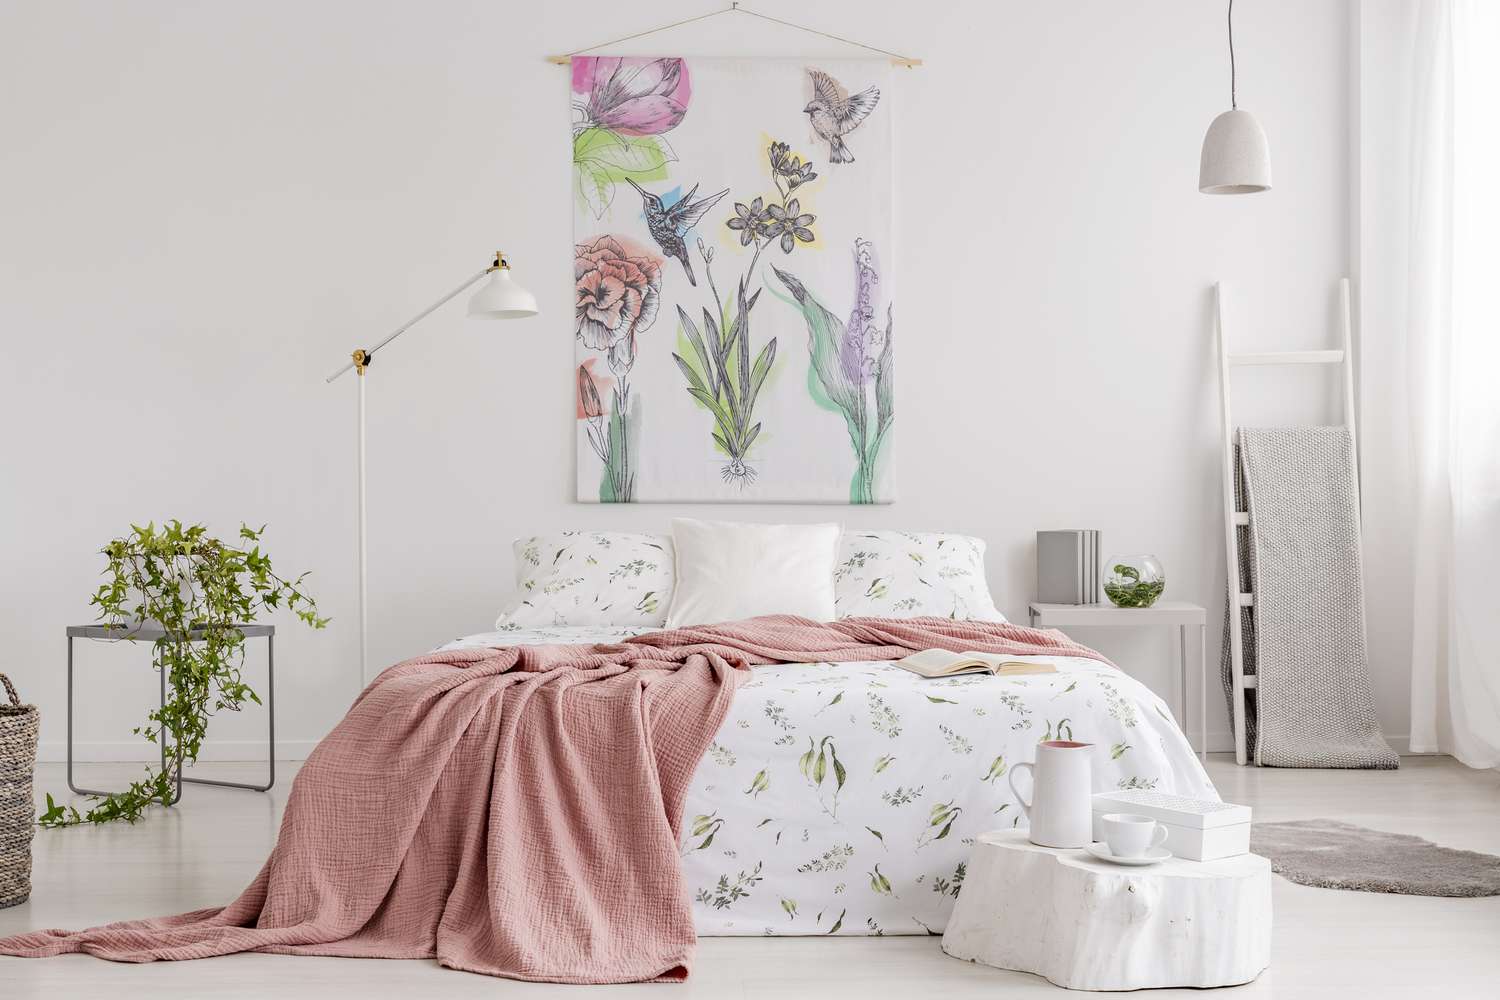 Pfirsichdecke und weiße Bettwäsche mit grünem Muster auf dem Bett in einem natürlichen, hellen Schlafzimmer. Wandteppich mit bunten Blumen und Kolibris an der Rückwand.